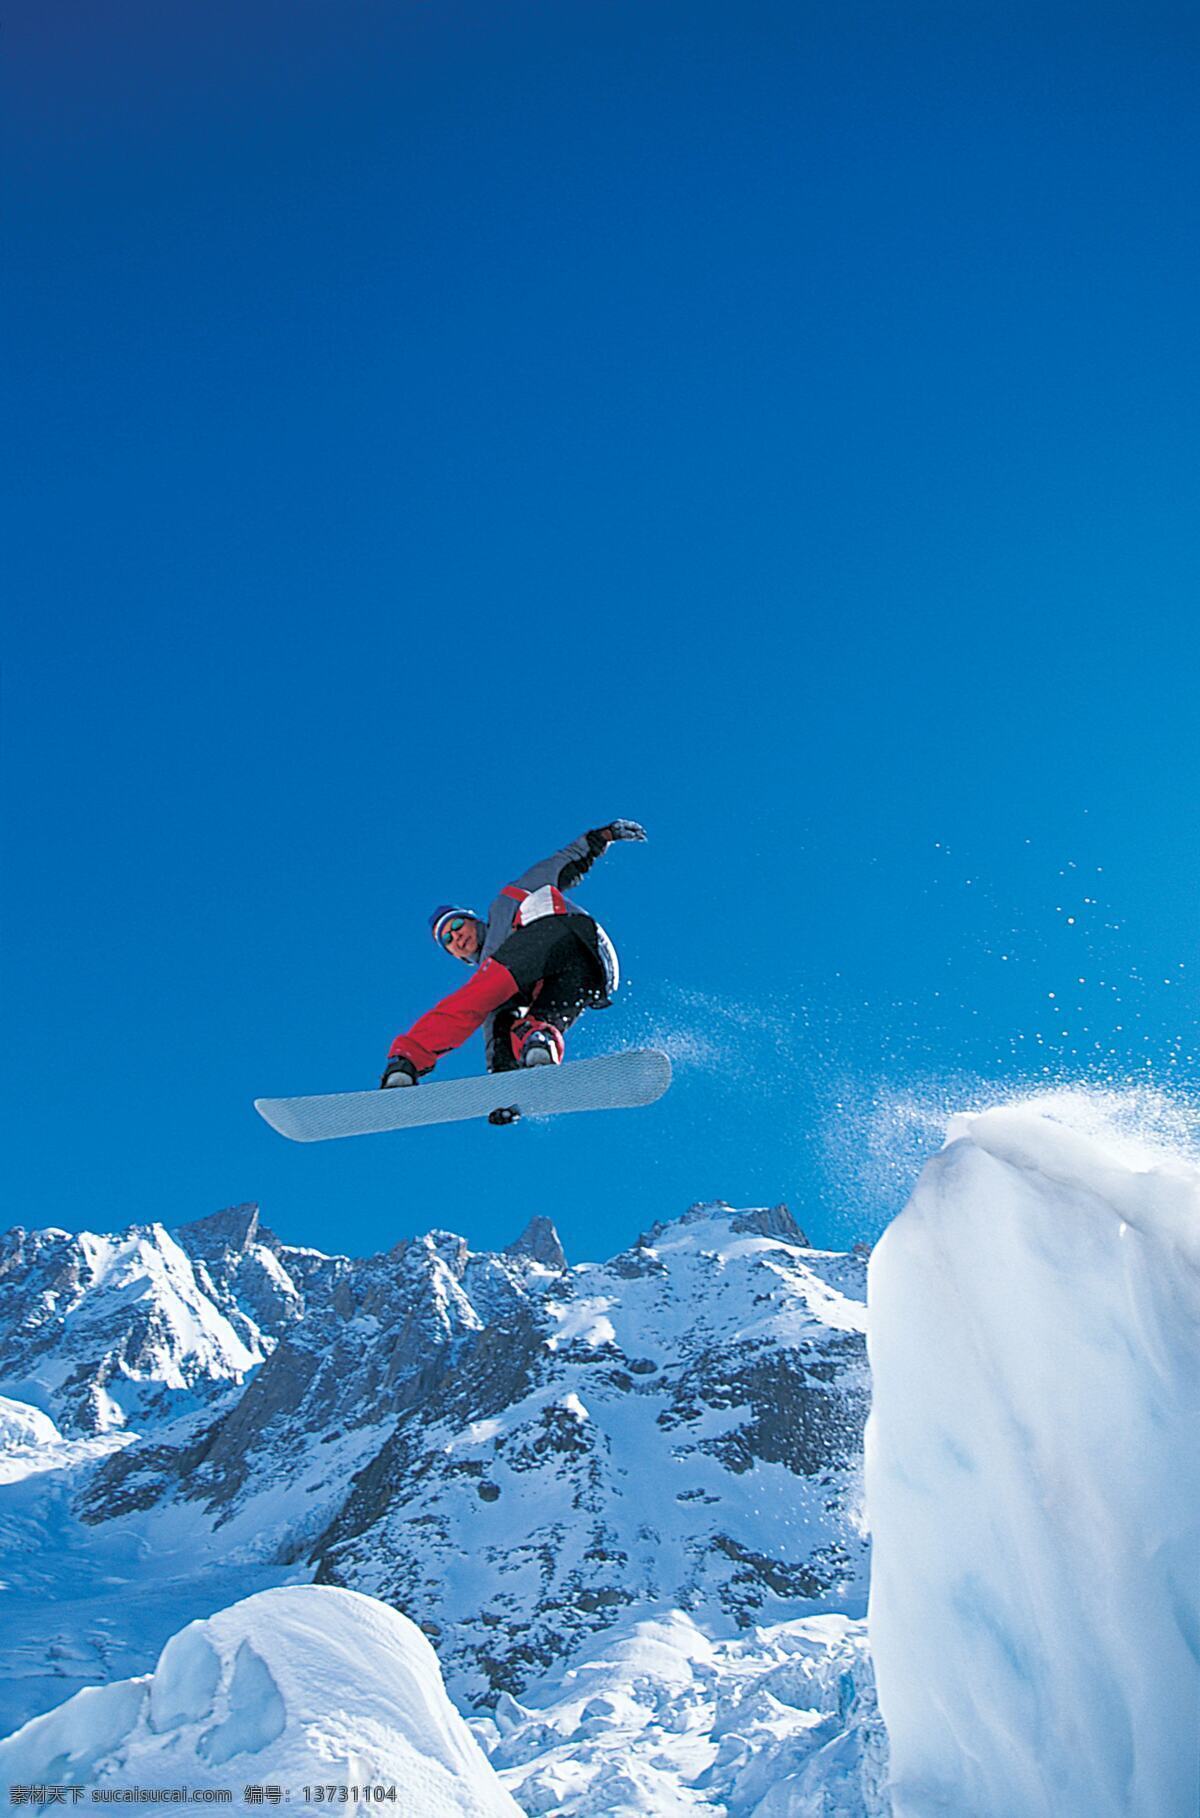 滑雪 极限运动 滑冰 刺激 惊险 飞跃 蓝天白云 高清运动图片 高清图片素材 旅游摄影 自然风景 摄影图库